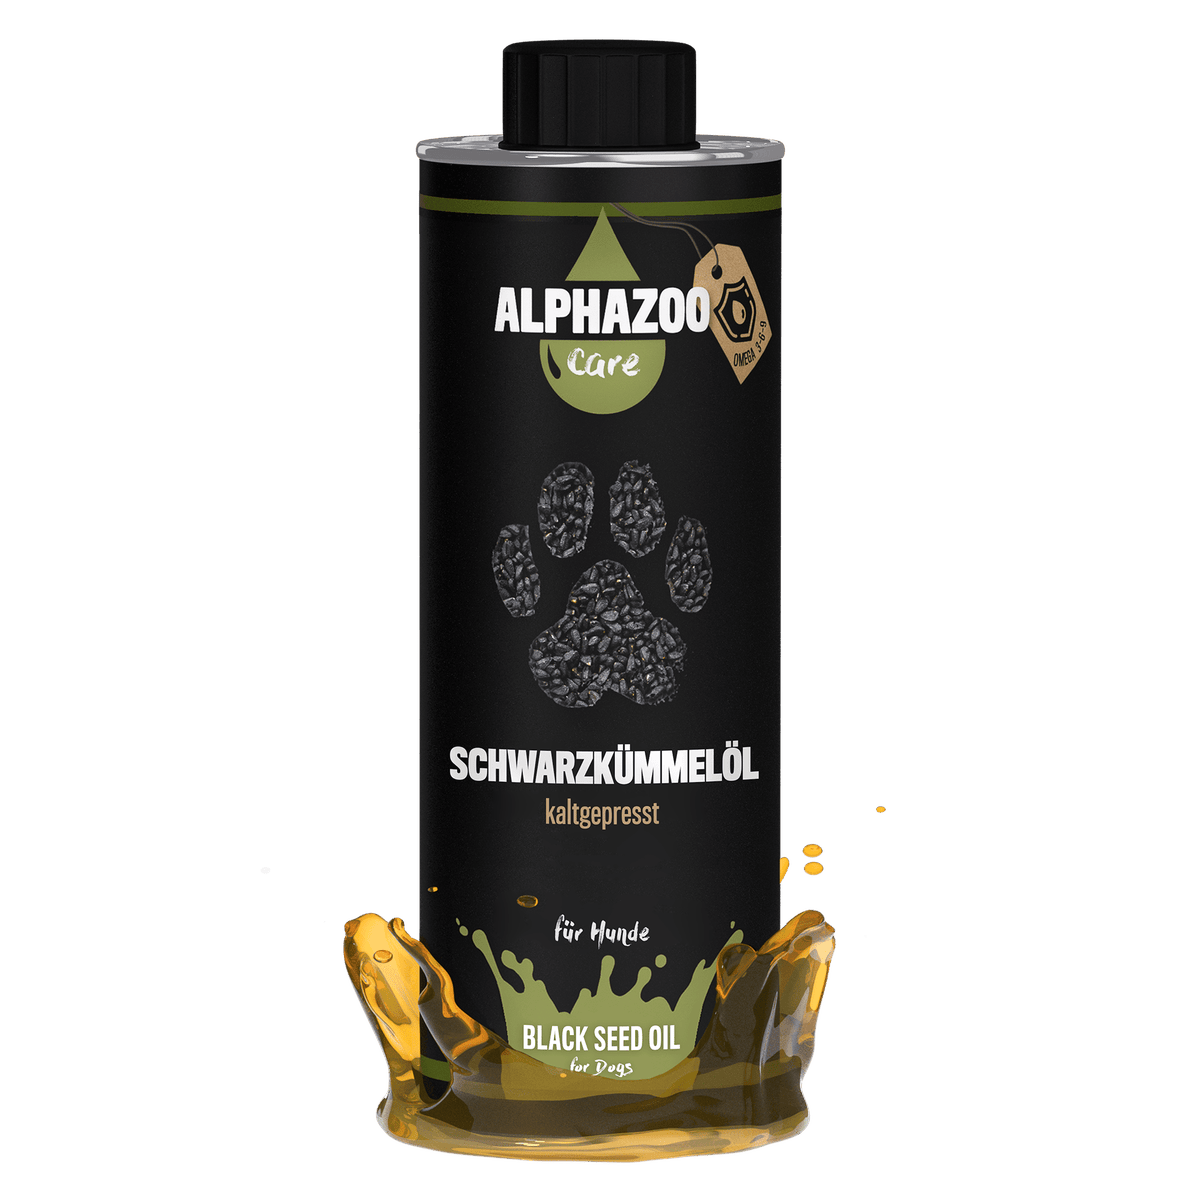 ALPHAZOO Premium Schwarzkümmelöl 500ml für Hunde I Echter Schwarzkümmel kaltgepresst